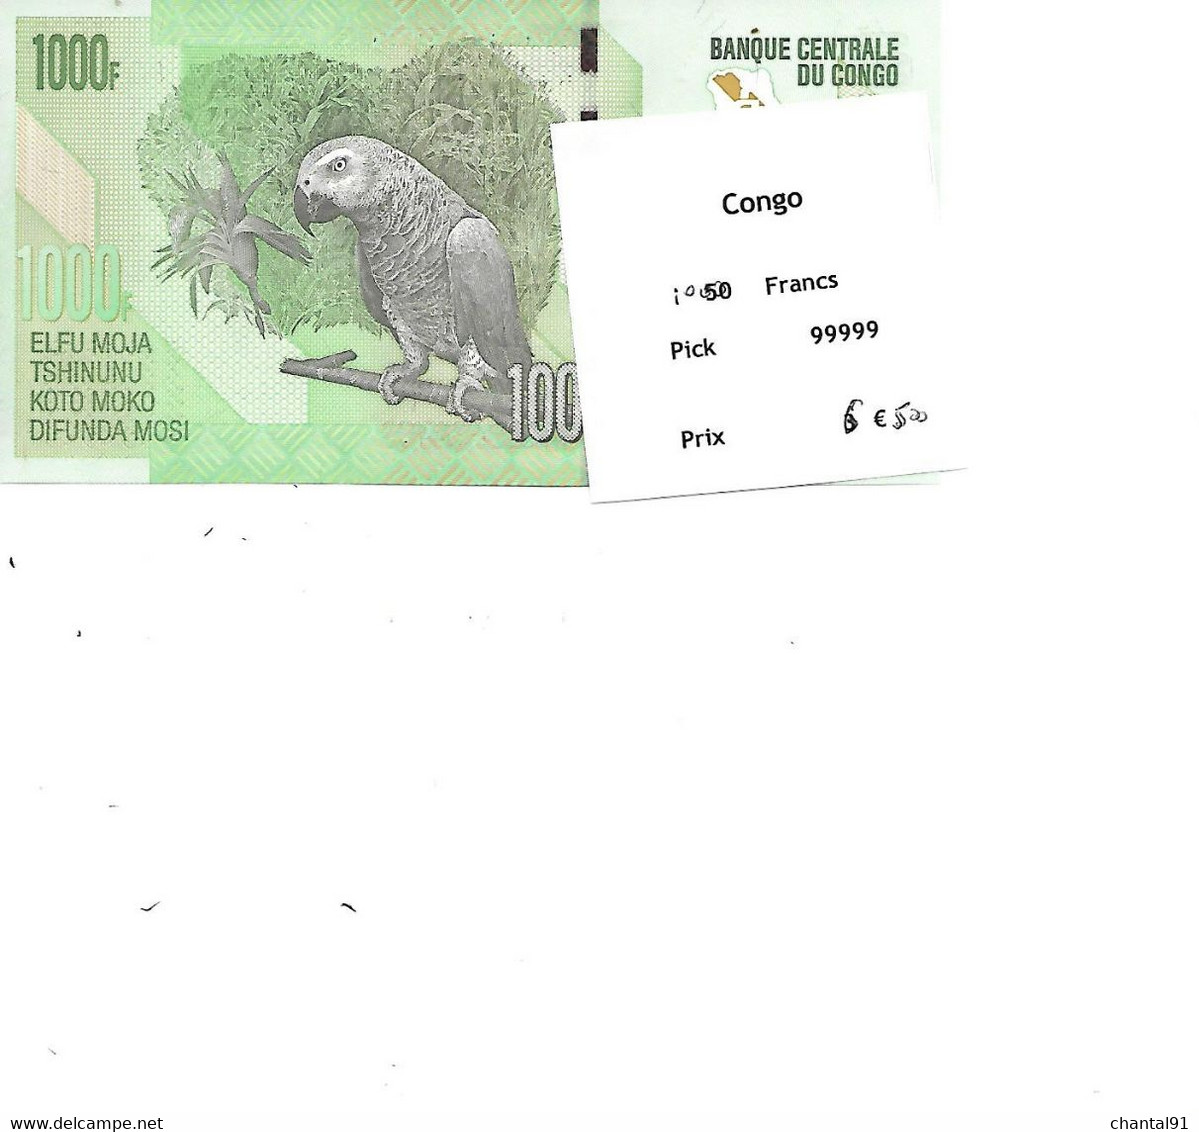 CONGO BILLET 1000 FRANCS PICK 99999 - Congo (République Démocratique 1998)